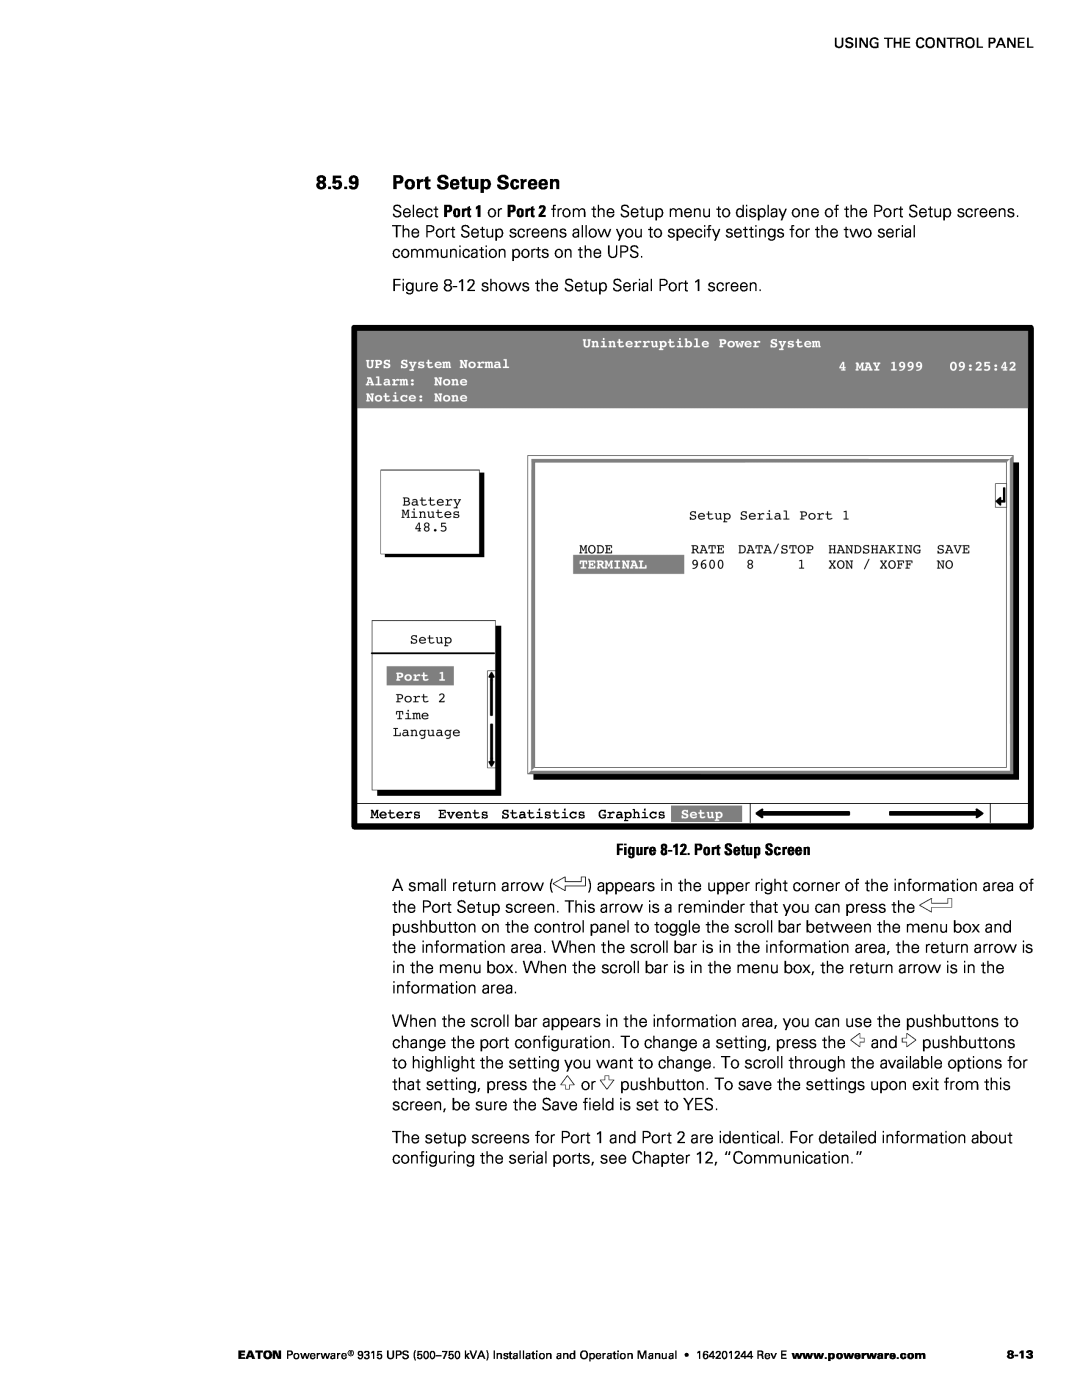 Powerware Powerware 9315 operation manual Port Setup Screen 